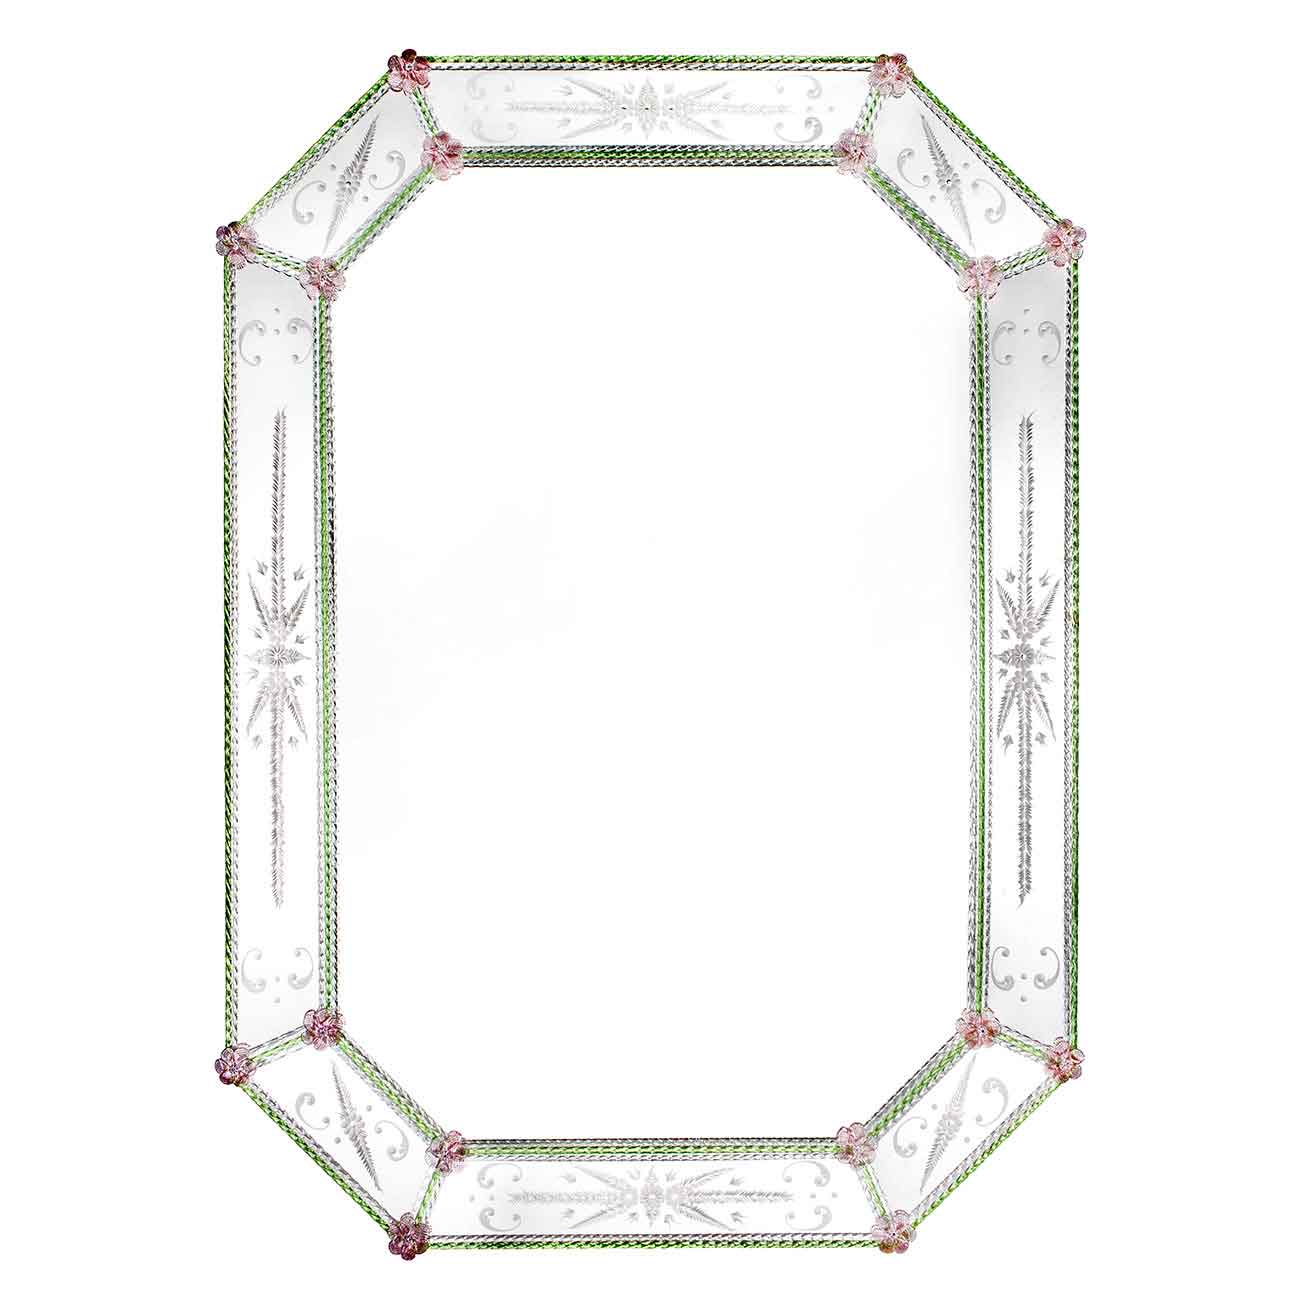 specchio veneziano ottagonale con fasce incise a mano, fiori e canne in vetro di murano di colore rosa e verde/cristallo su fondo argento